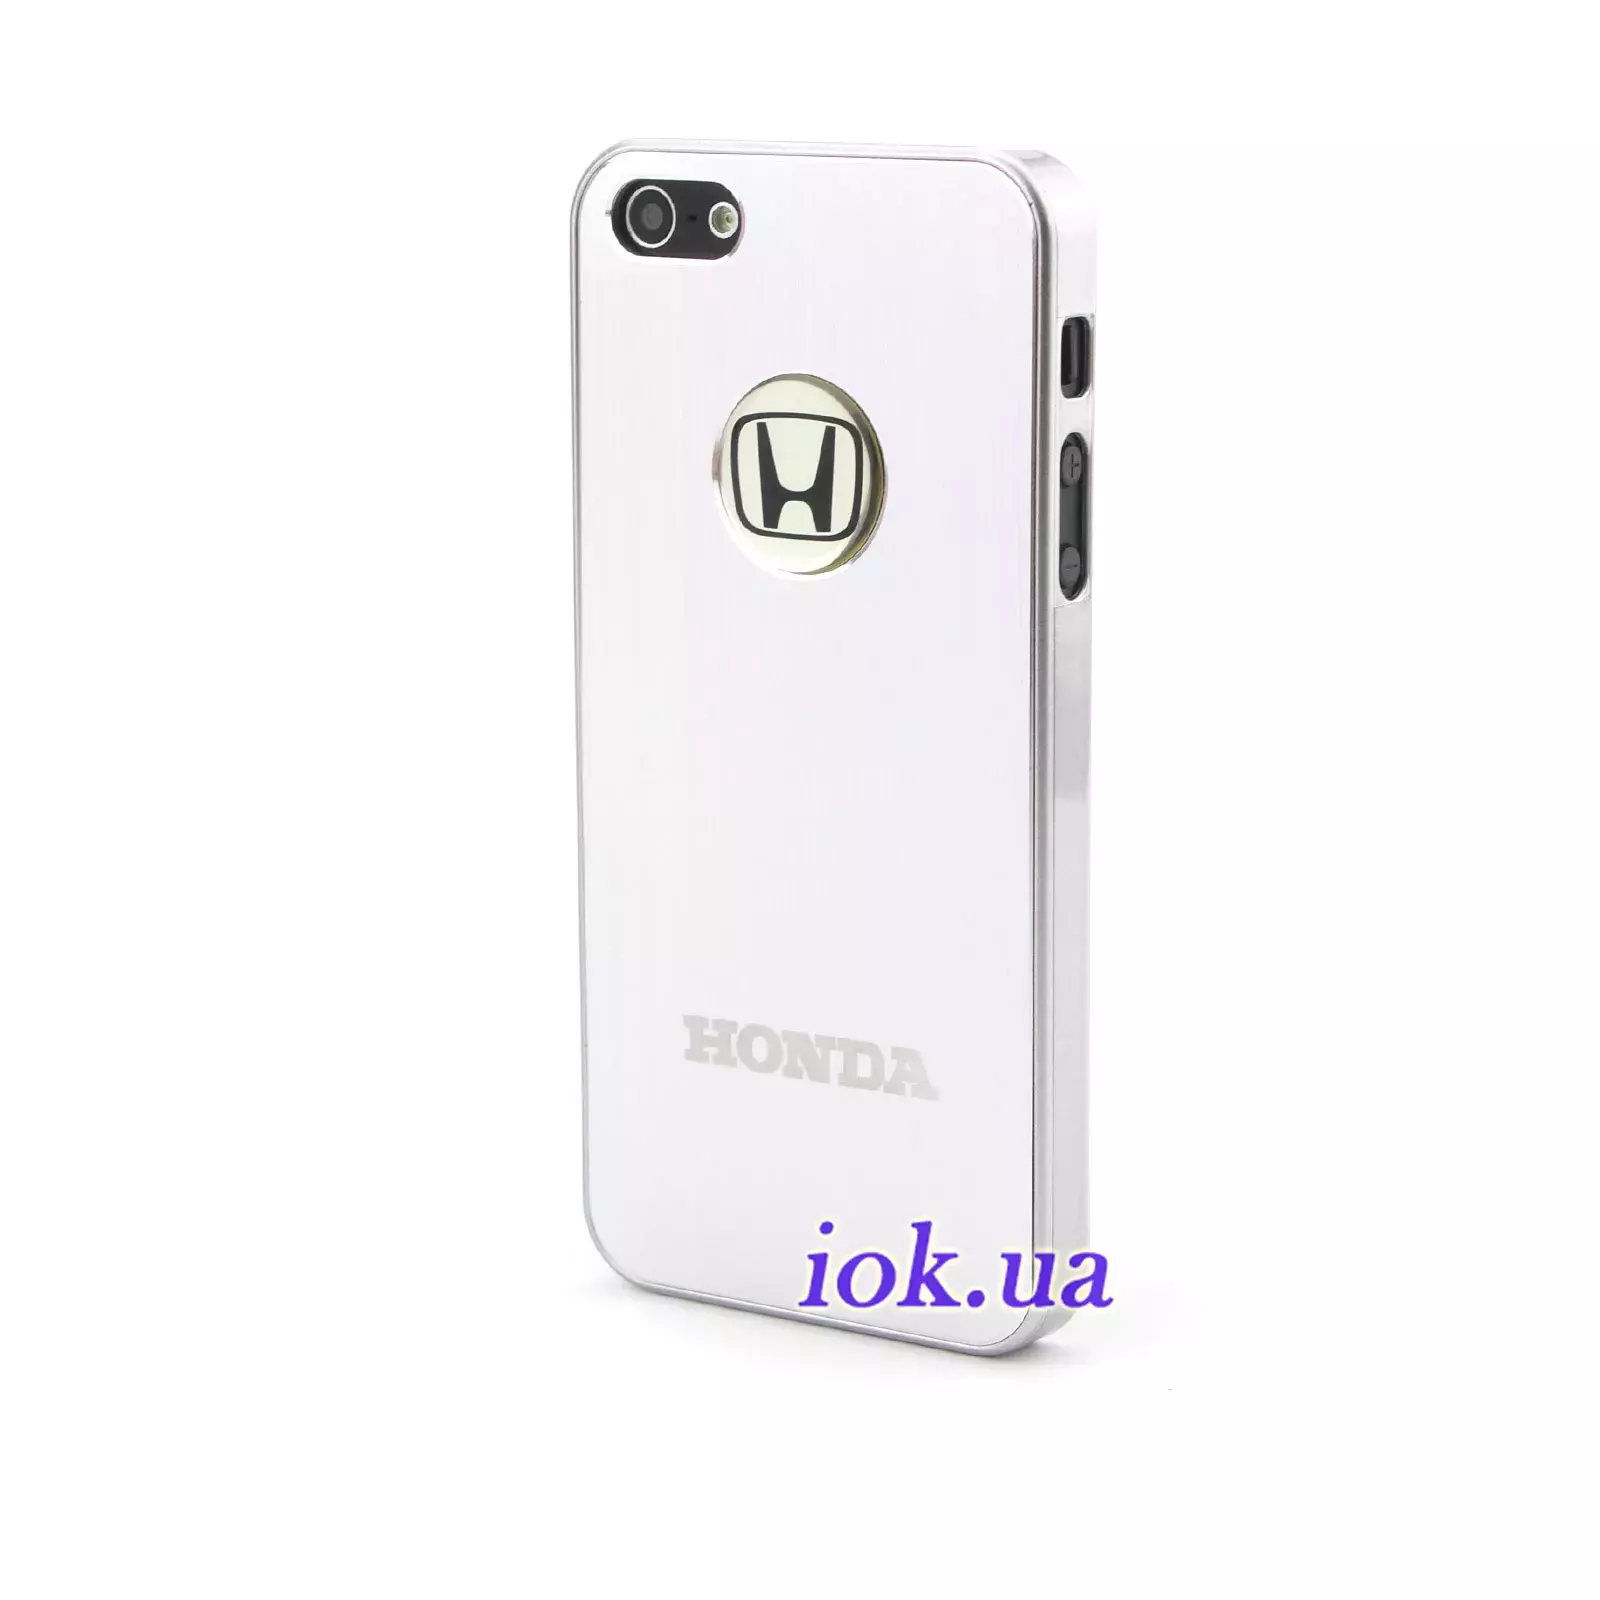 Металлический чехол на iPhone 5 - Honda